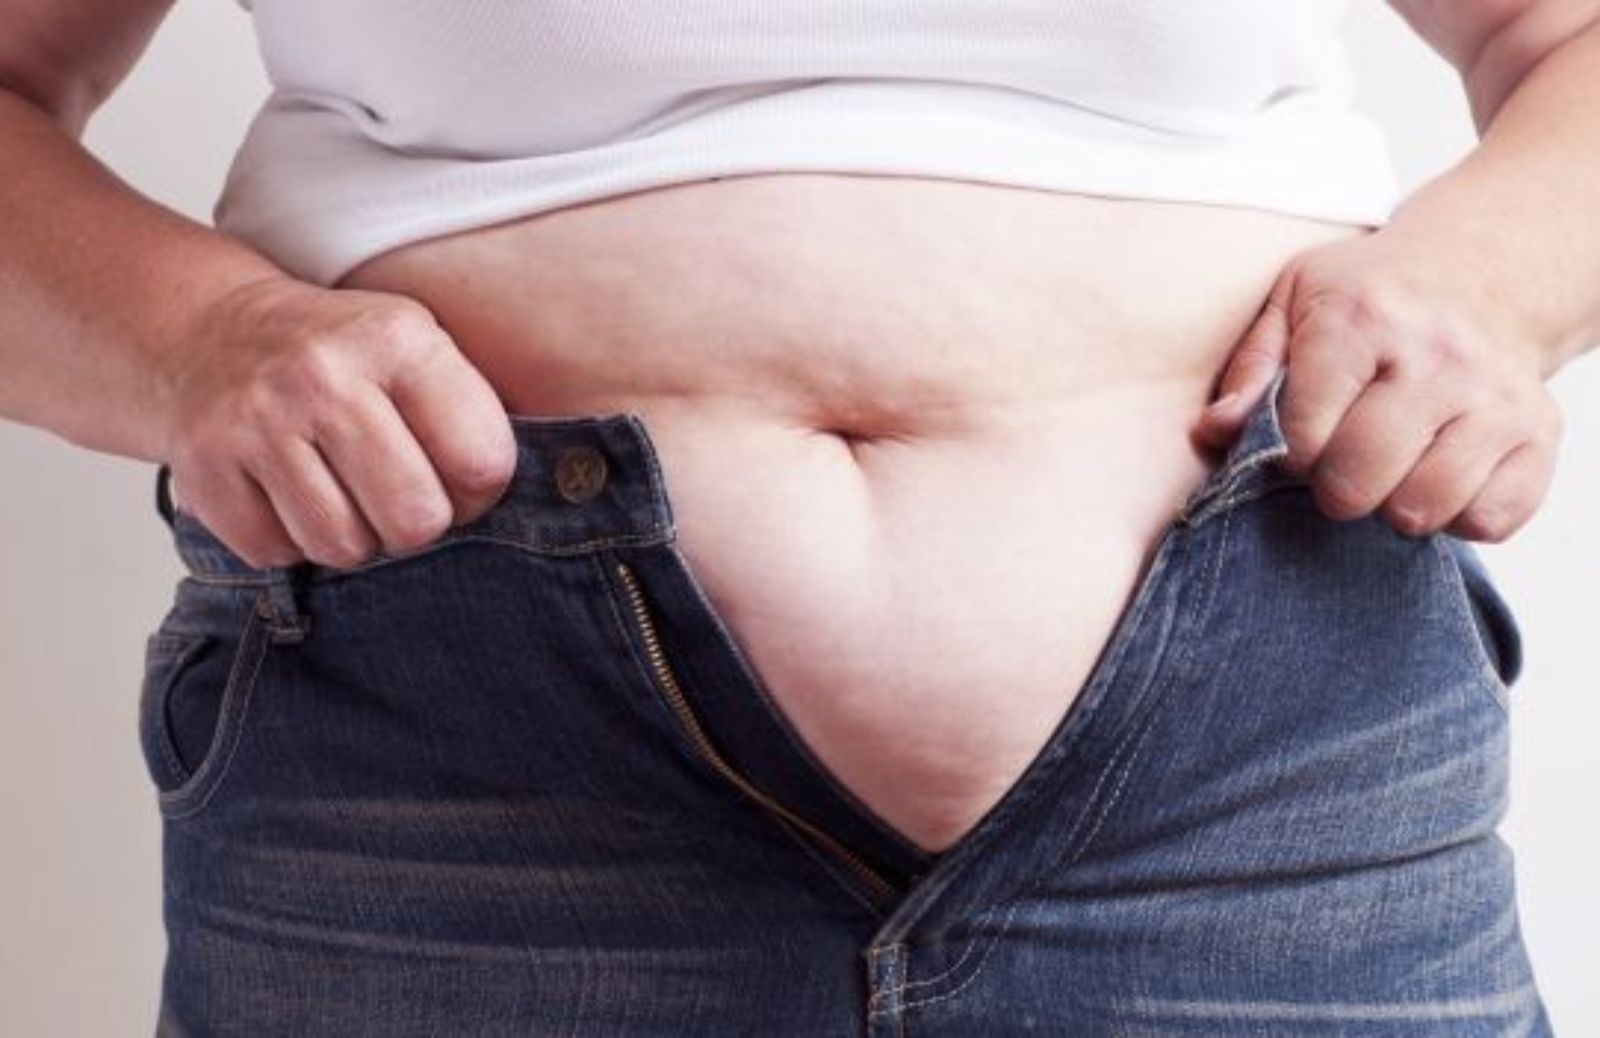 Malattie reumatiche, attenzione al sovrappeso: ostacola la guarigione